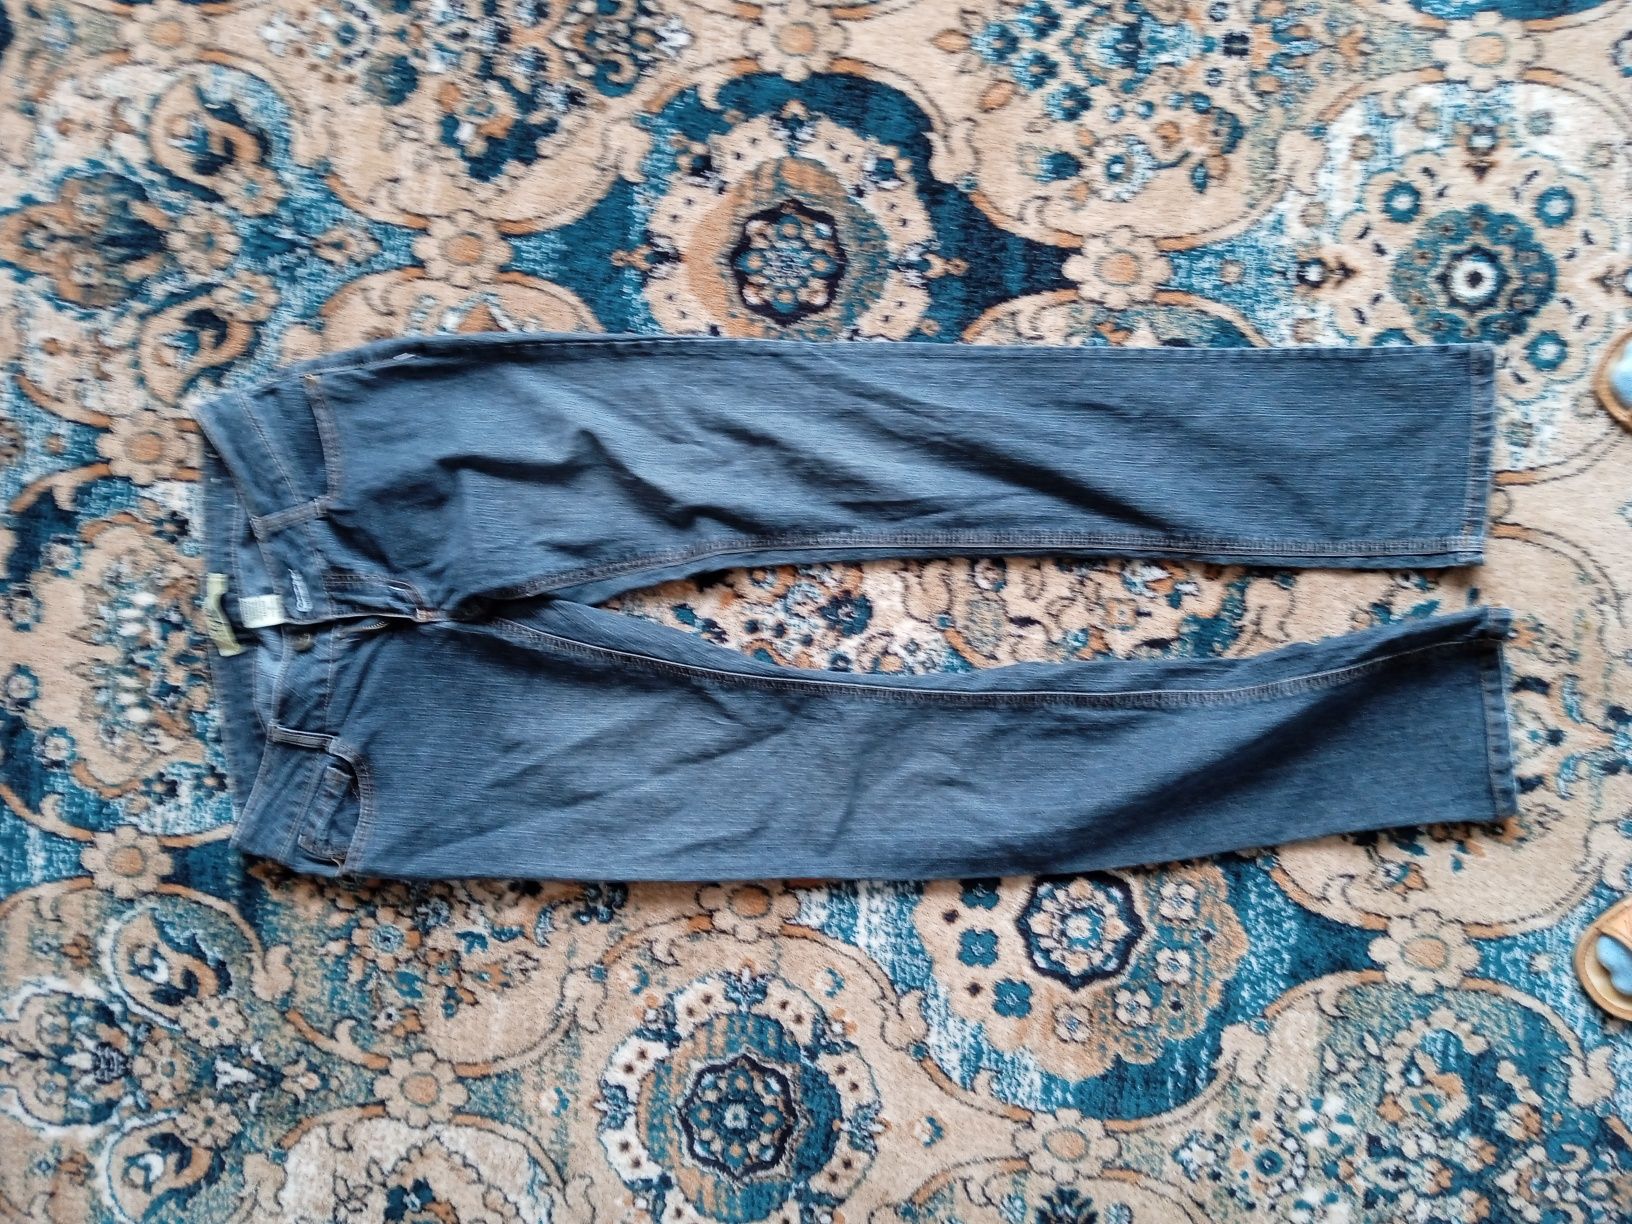 Jeansy i spodnie oraz bluzeczki roz. S/M/38